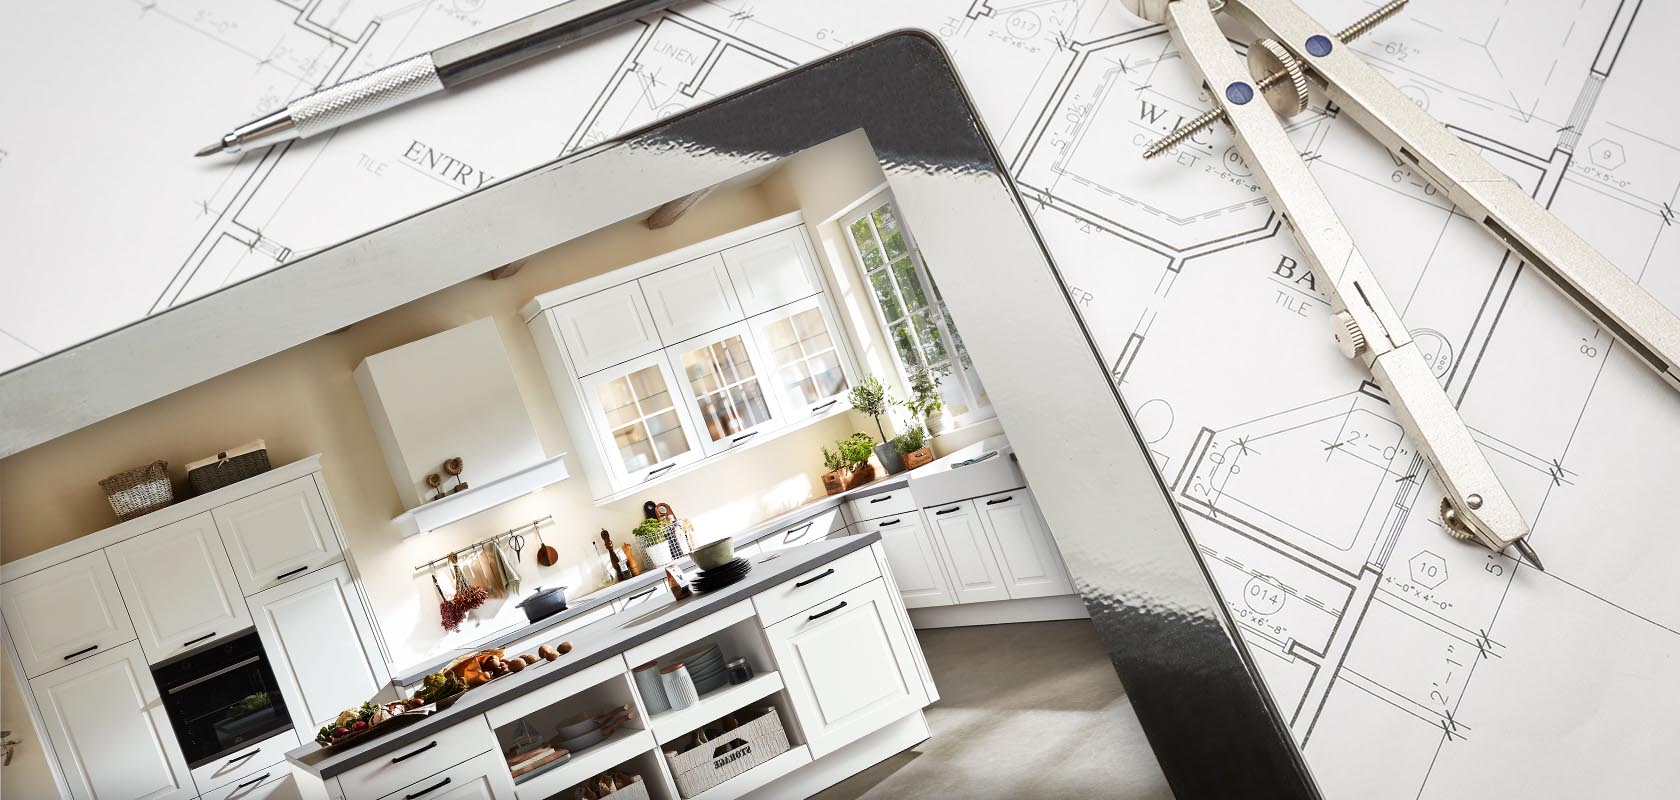 Overgang van bouwtekeningen naar een stijlvolle, moderne keuken met witte kasten, waarbij de transformatie van ontwerp naar voltooiing wordt getoond in een huisrenovatie.